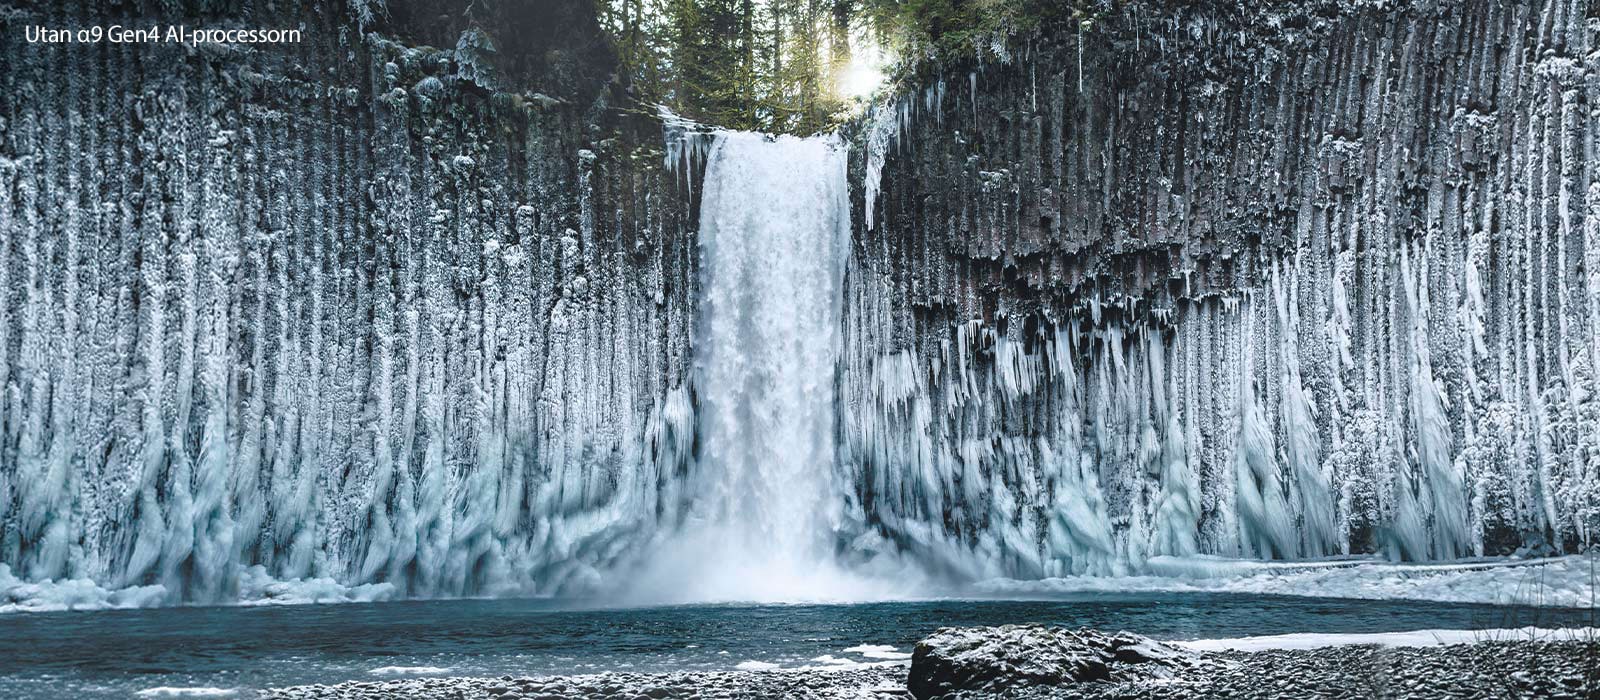 Skjutbar jämförelsebild av kvalitén hos bilden av ett fruset vattenfall i en skog.